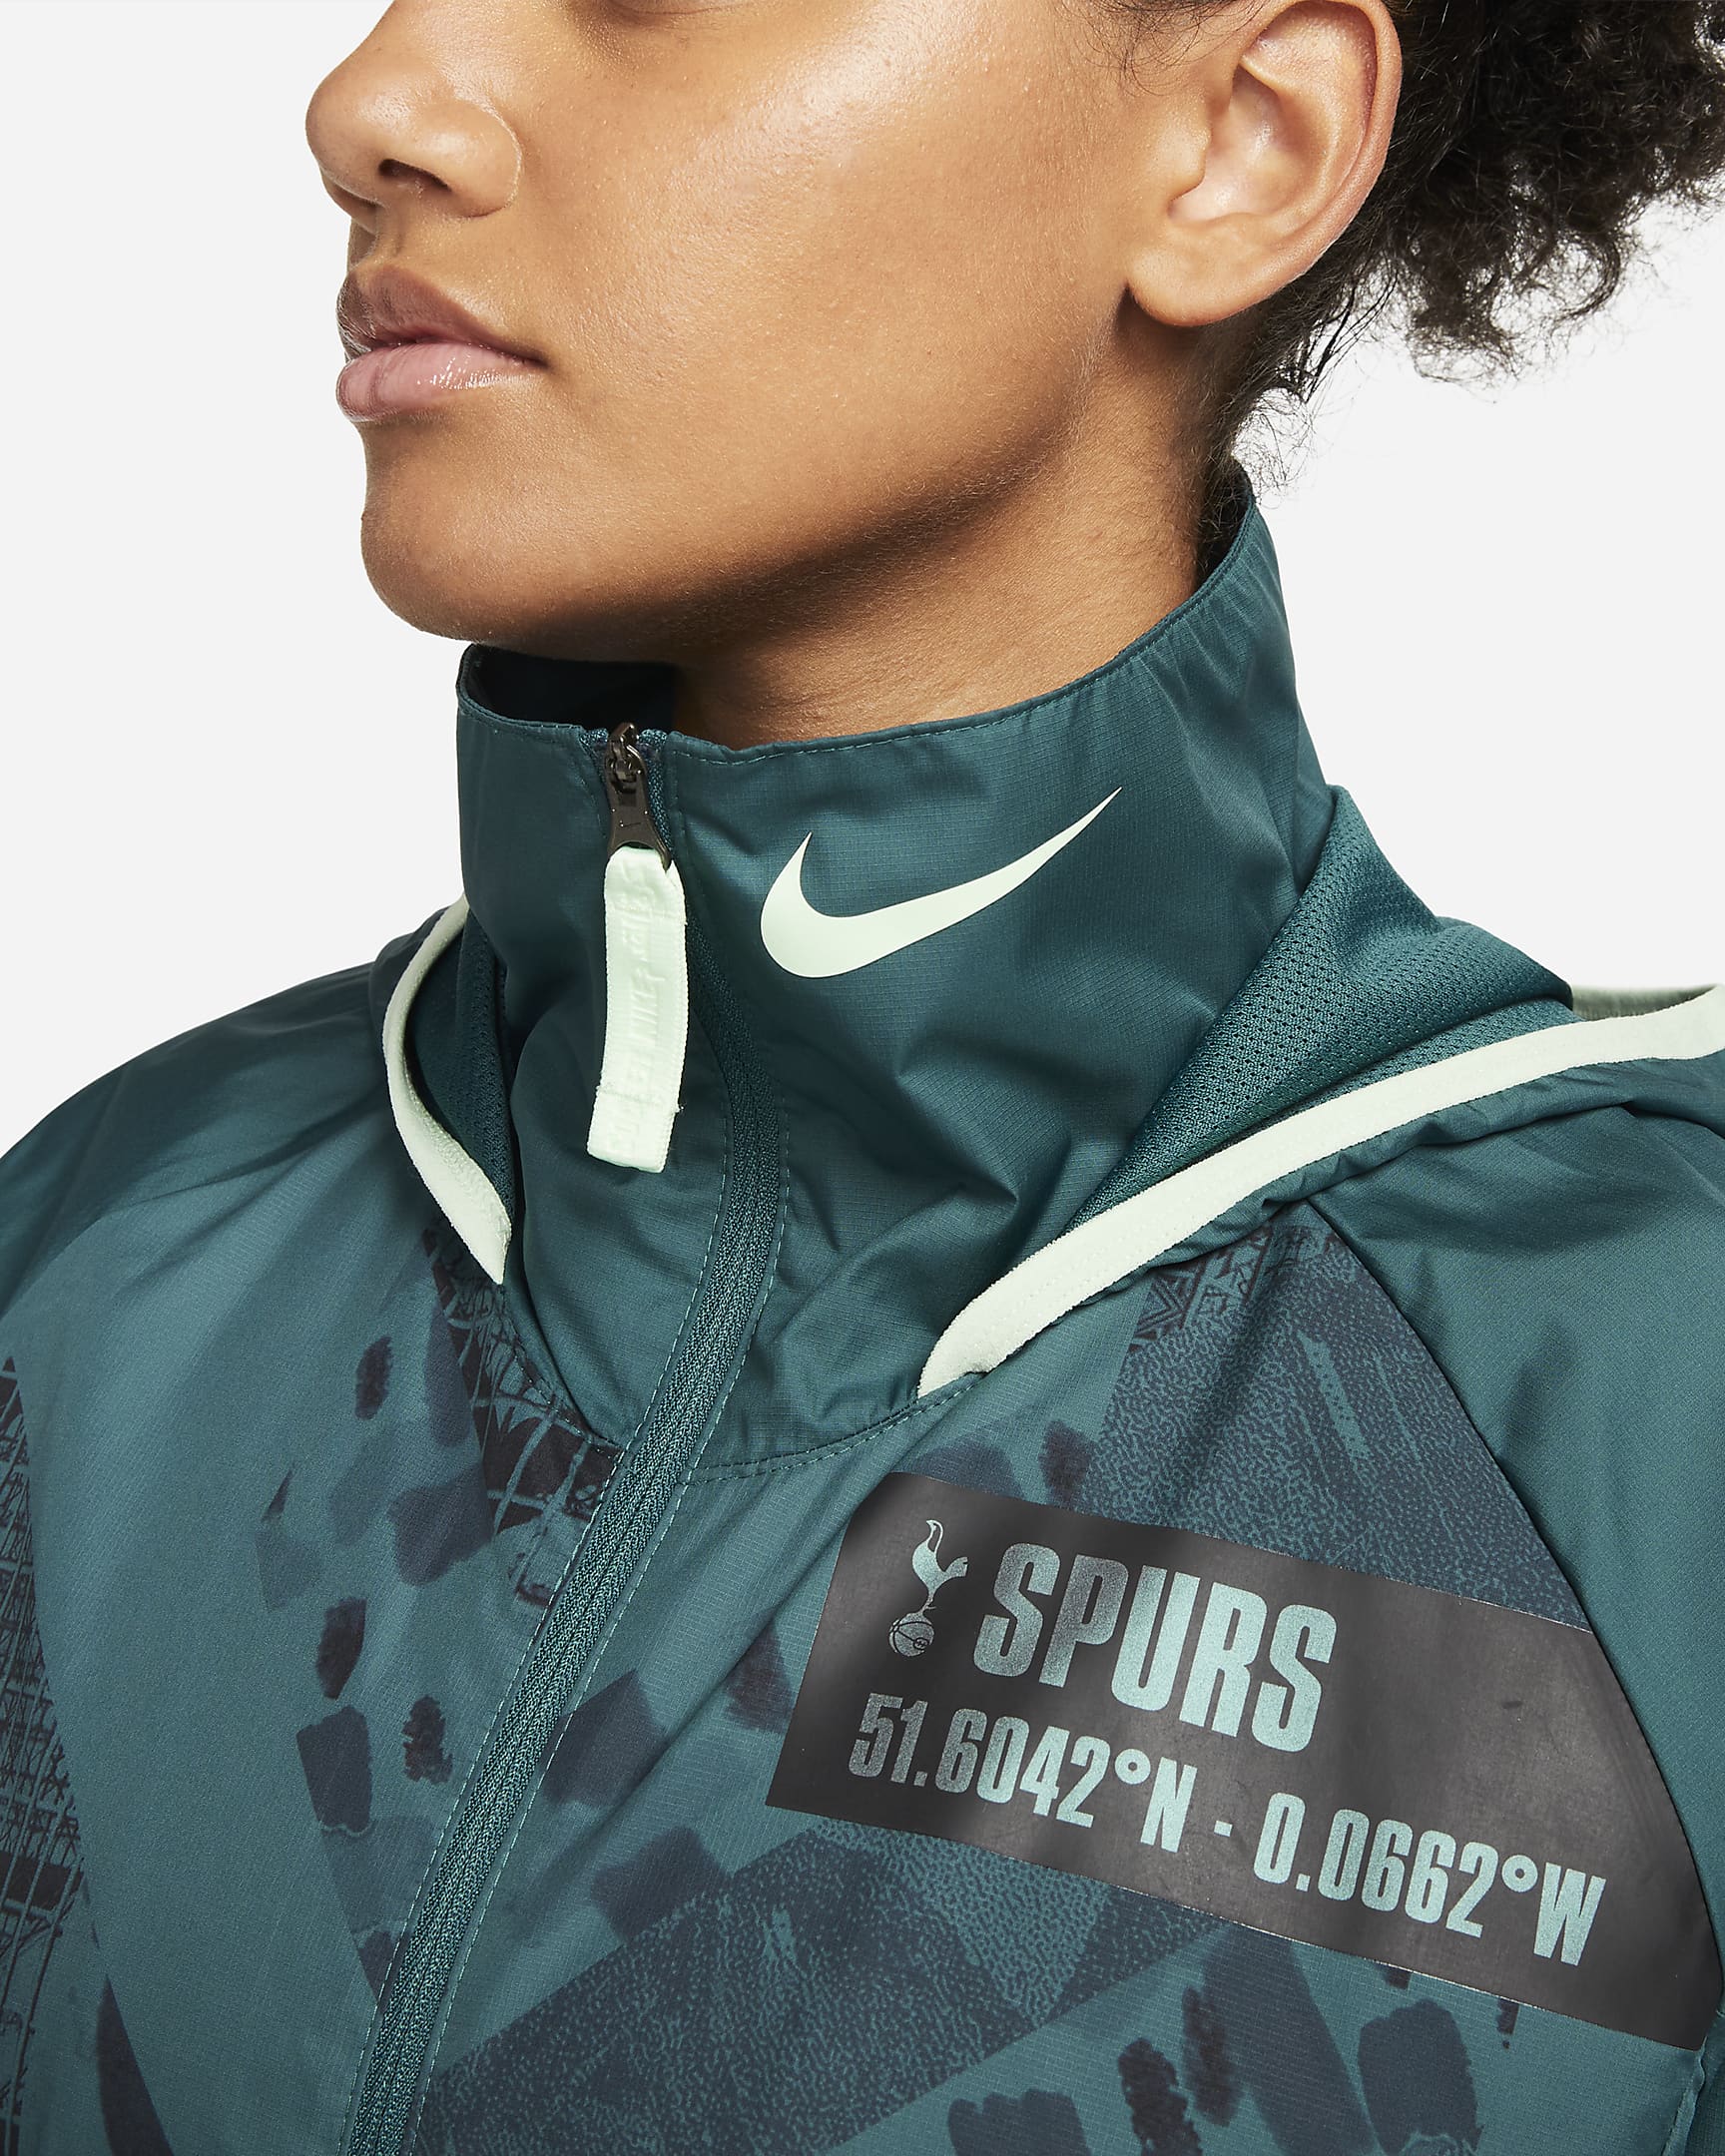 Tottenham Hotspur AWF Women's Football Jacket. Nike SK